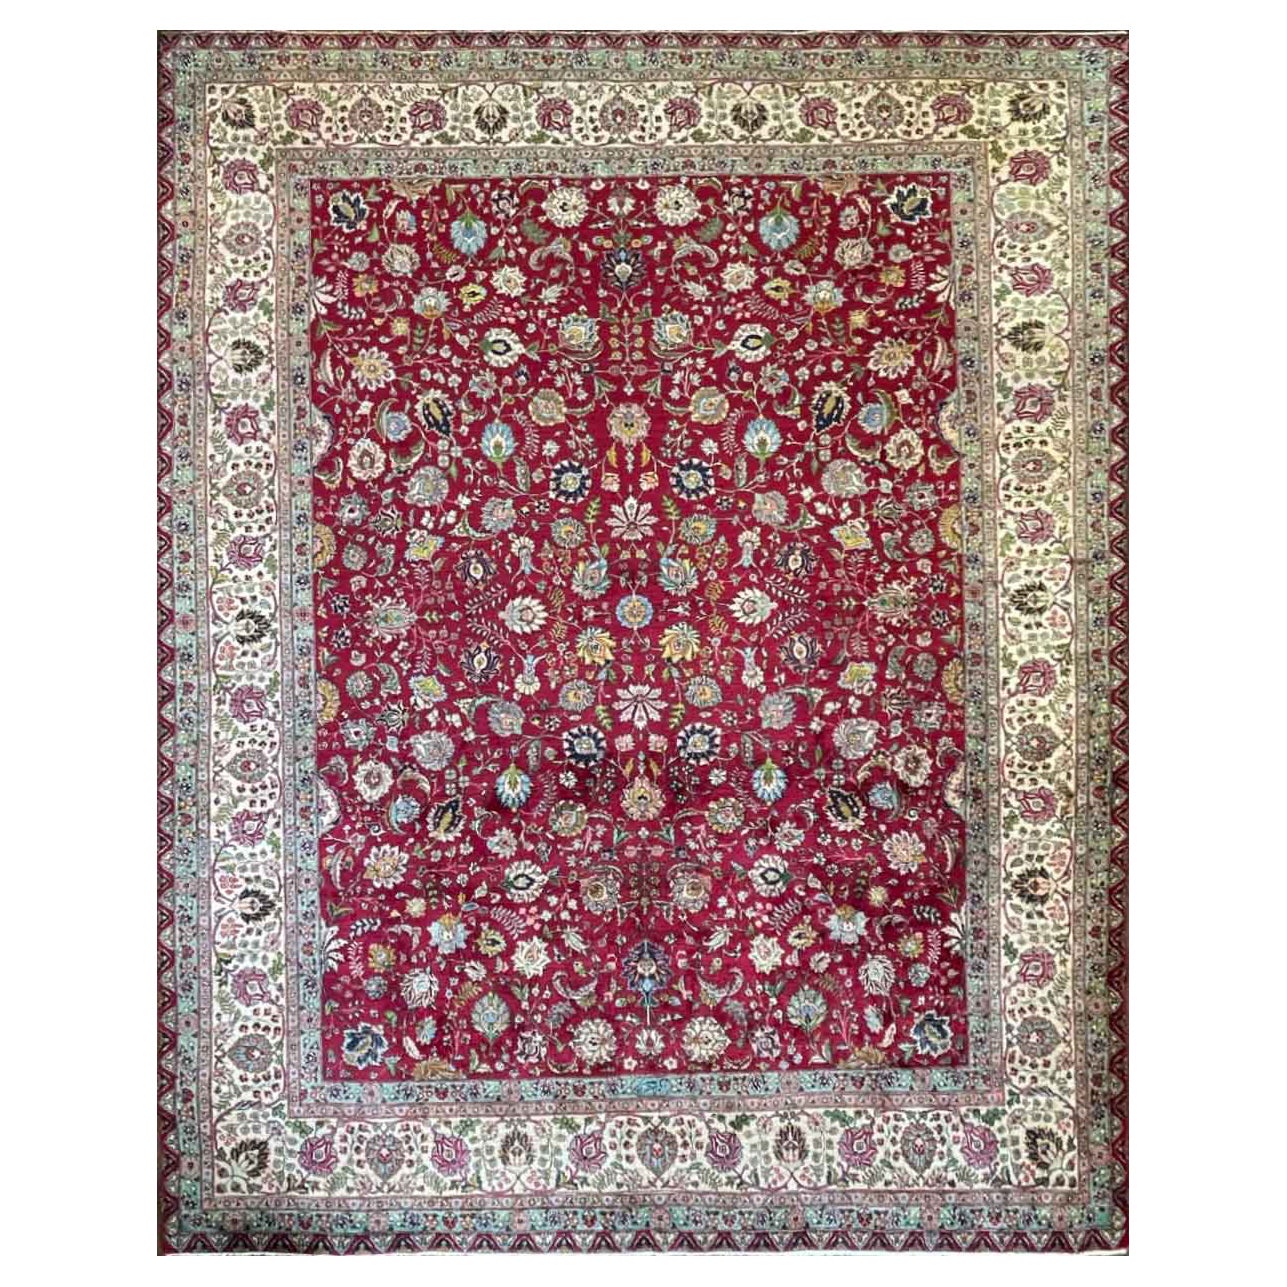 Antique/Vintage Persian Tabriz Carpet, 11'6" x 14'5" c-1940's For Sale